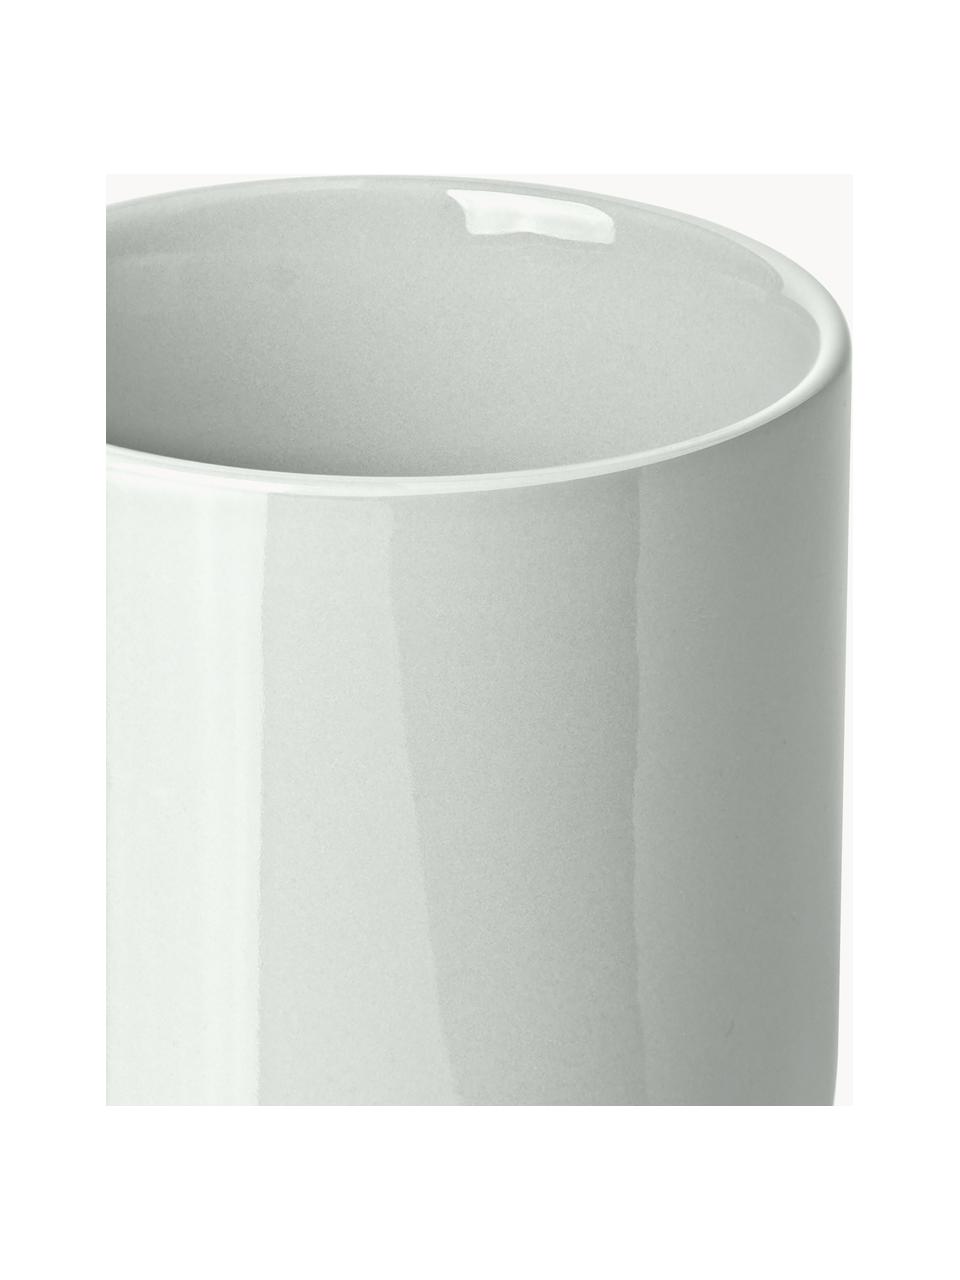 Tazze da caffè in porcellana Nessa 4 pz, Porcellana a pasta dura di alta qualità smaltata, Grigio chiaro lucido, Ø 8 x Alt. 10 cm, 200 ml